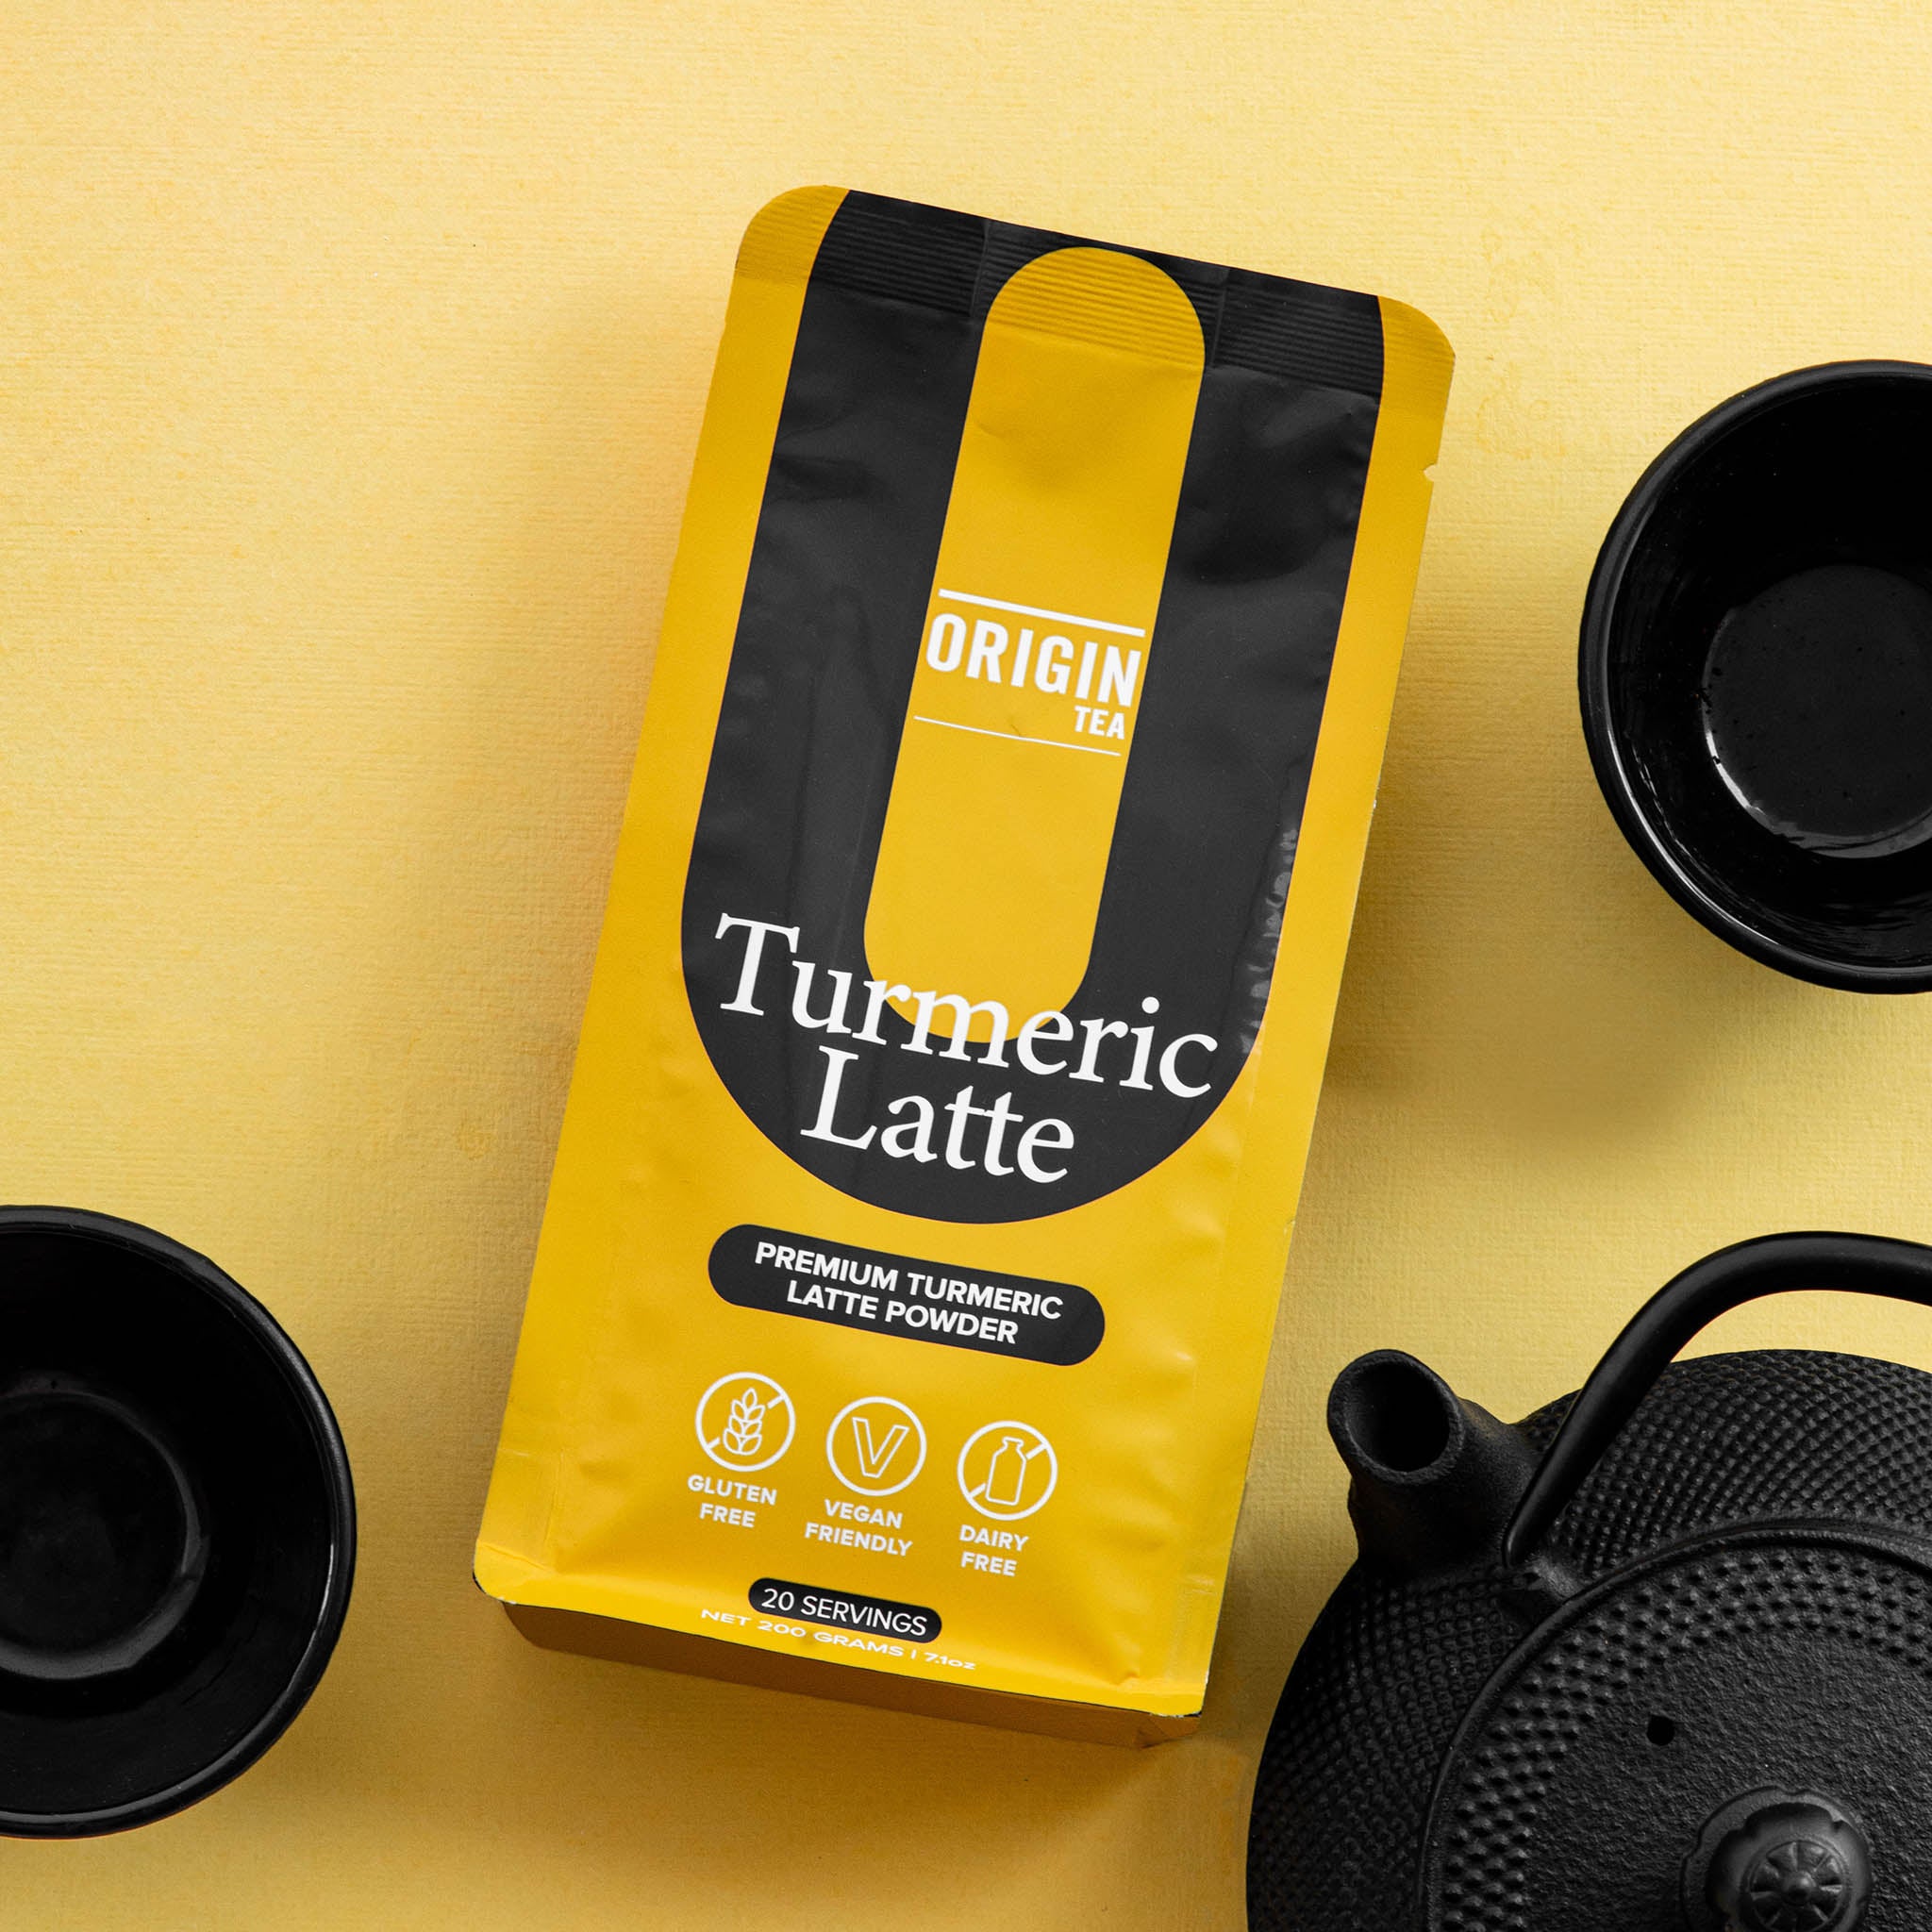 Caffeine Free Turmeric Latte - 200g - Origin Tea